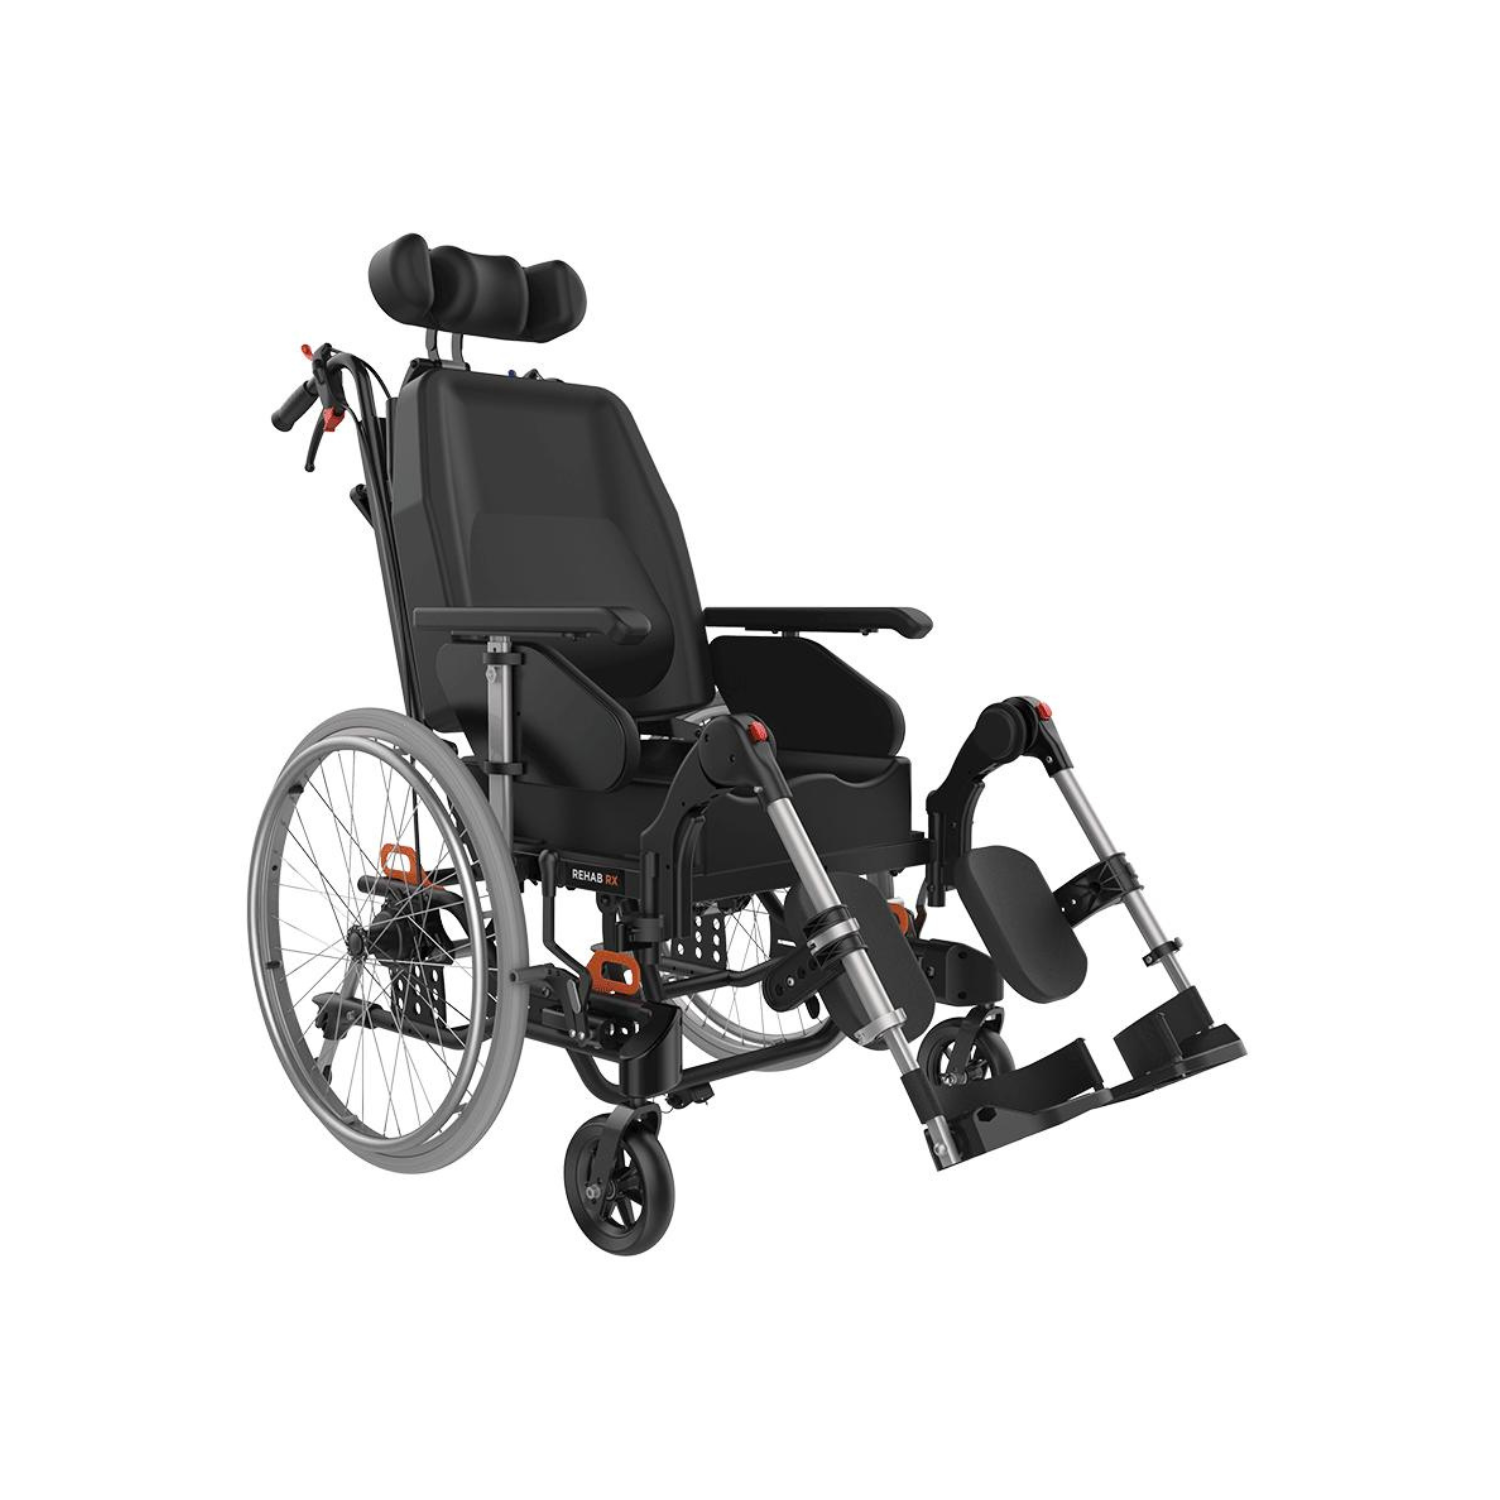 Aspire-Rehab-RX-Advanced-TIS-Wheelchair-02